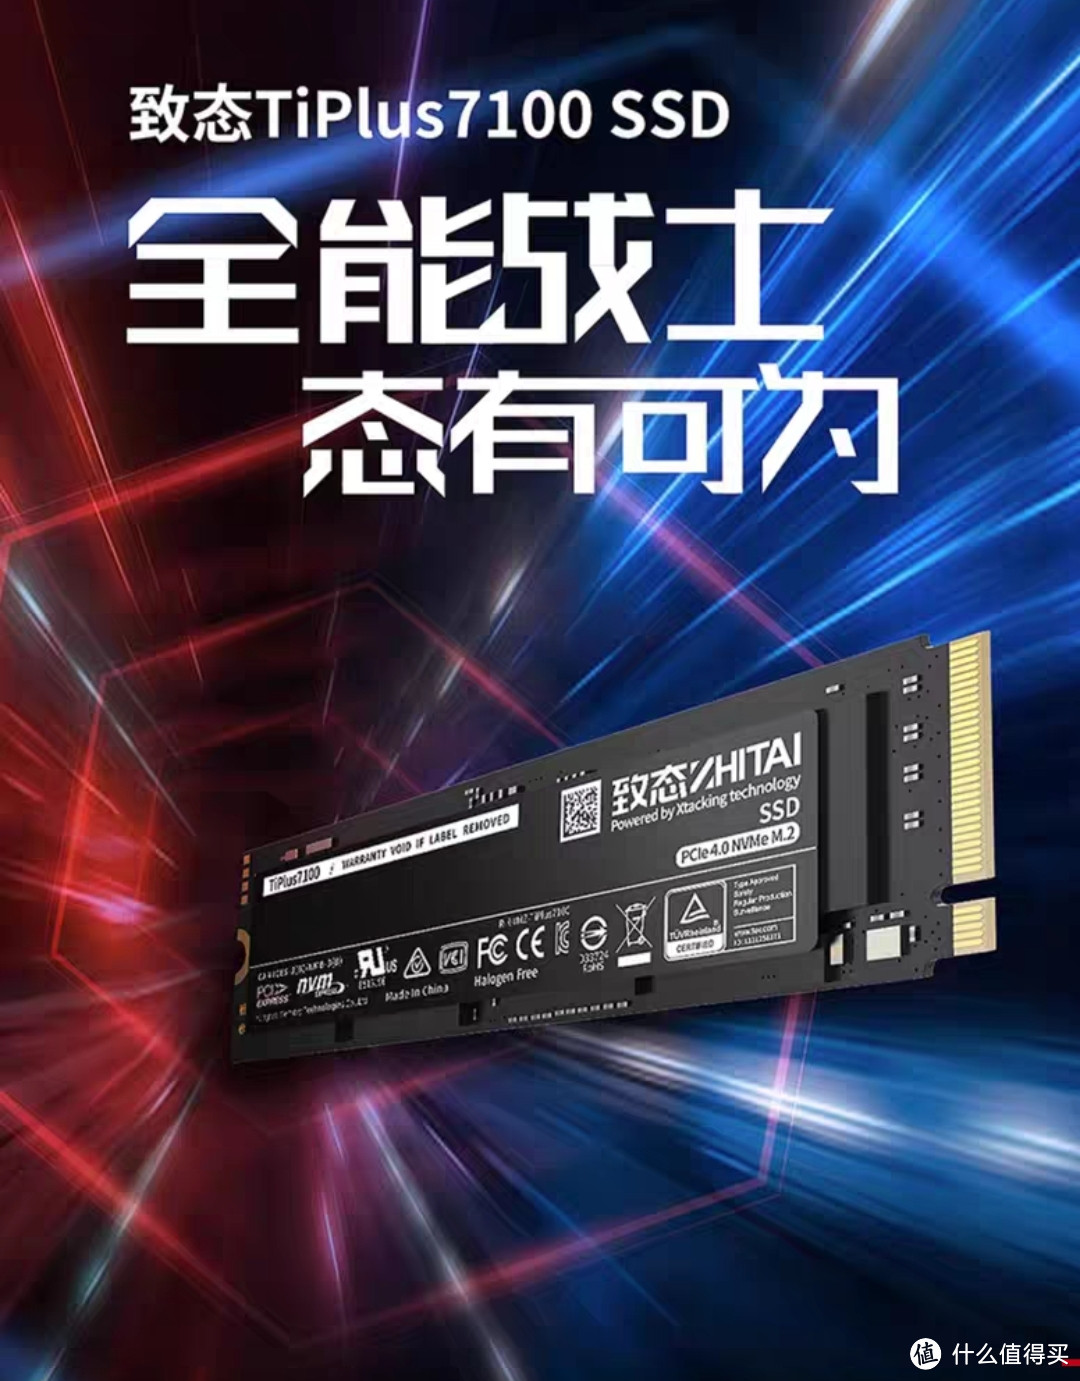 1TB 致态 TiPlus7100 固态跌到434元 ,长江存储新一代闪存TLC颗粒（PCI-E4.0）,五年保修,近期致态好价!